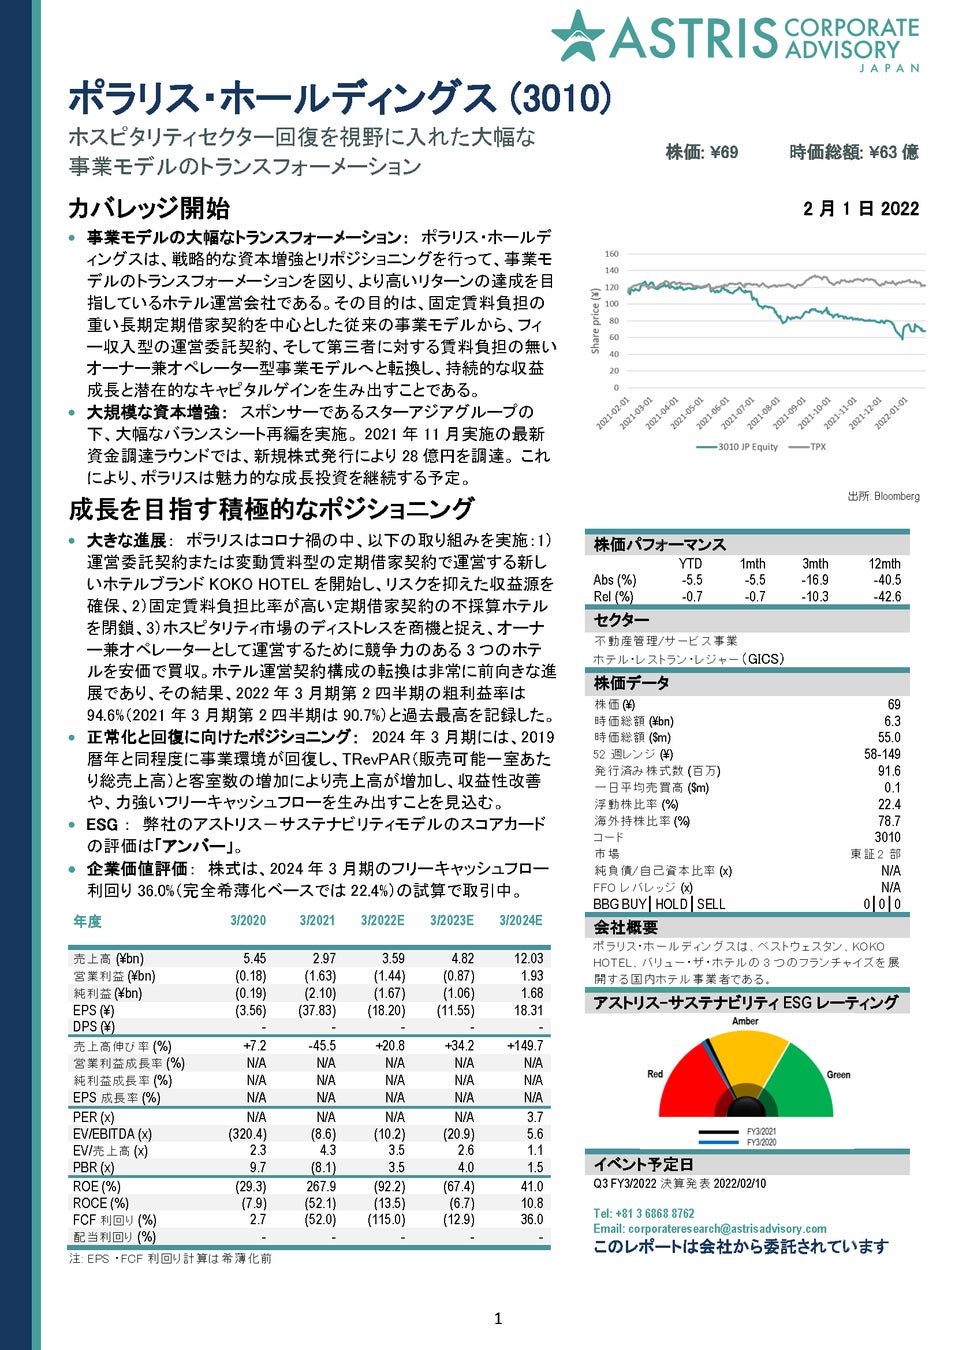 三井物産デジタルコモディティーズが、日本初の金価格に連動することを目指す暗号資産発行を開始